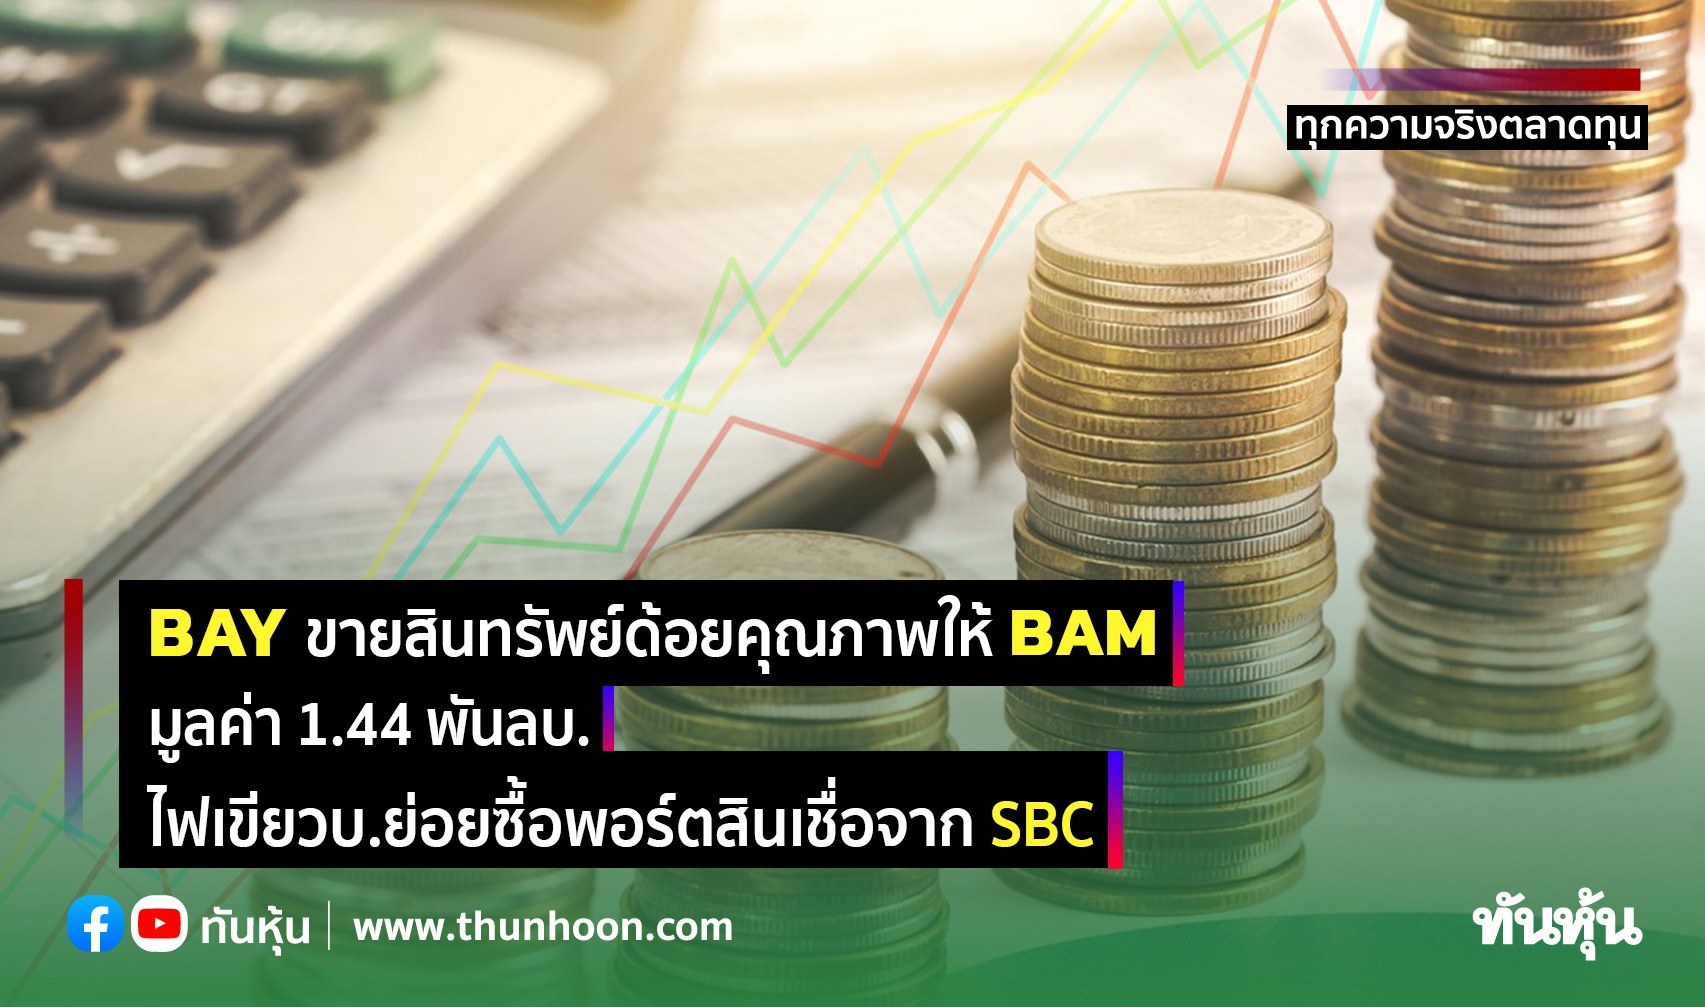 BAY ขายสินทรัพย์ด้อยคุณภาพให้ BAM มูลค่า 1.44 พันลบ.,ไฟเขียวบ.ย่อยซื้อพอร์ตสินเชื่อจาก SBC